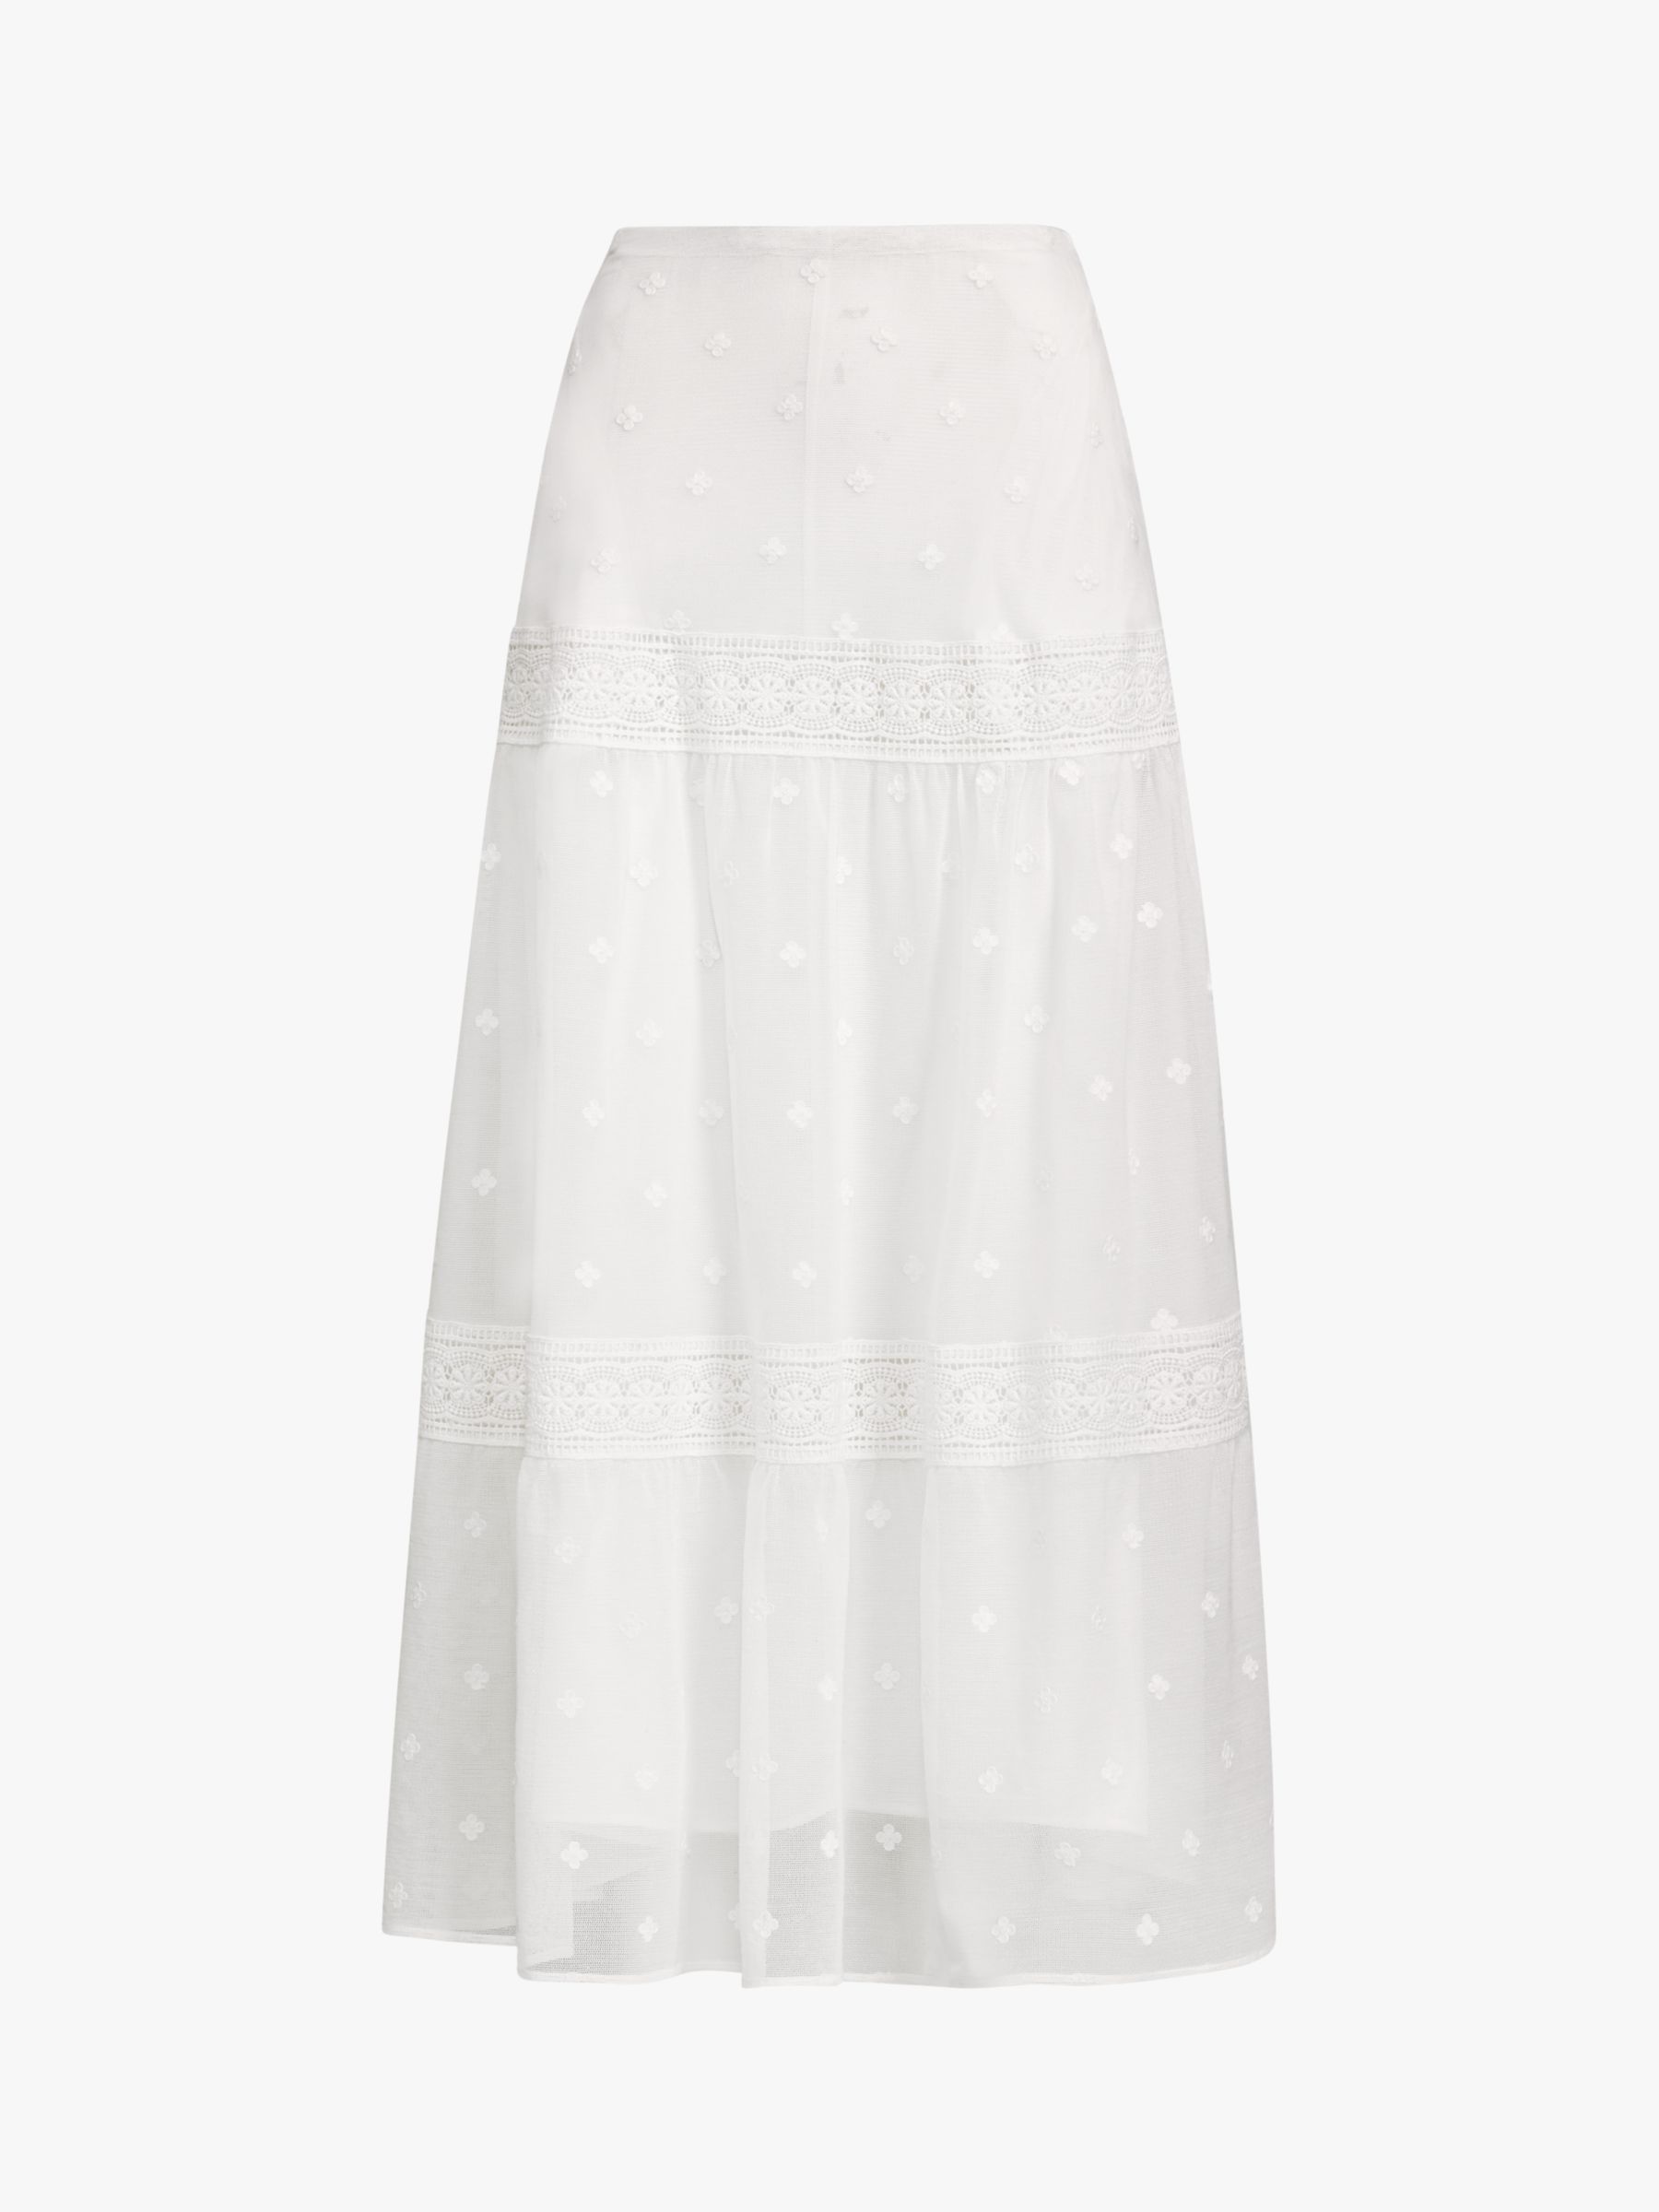 ralph lauren white skirt